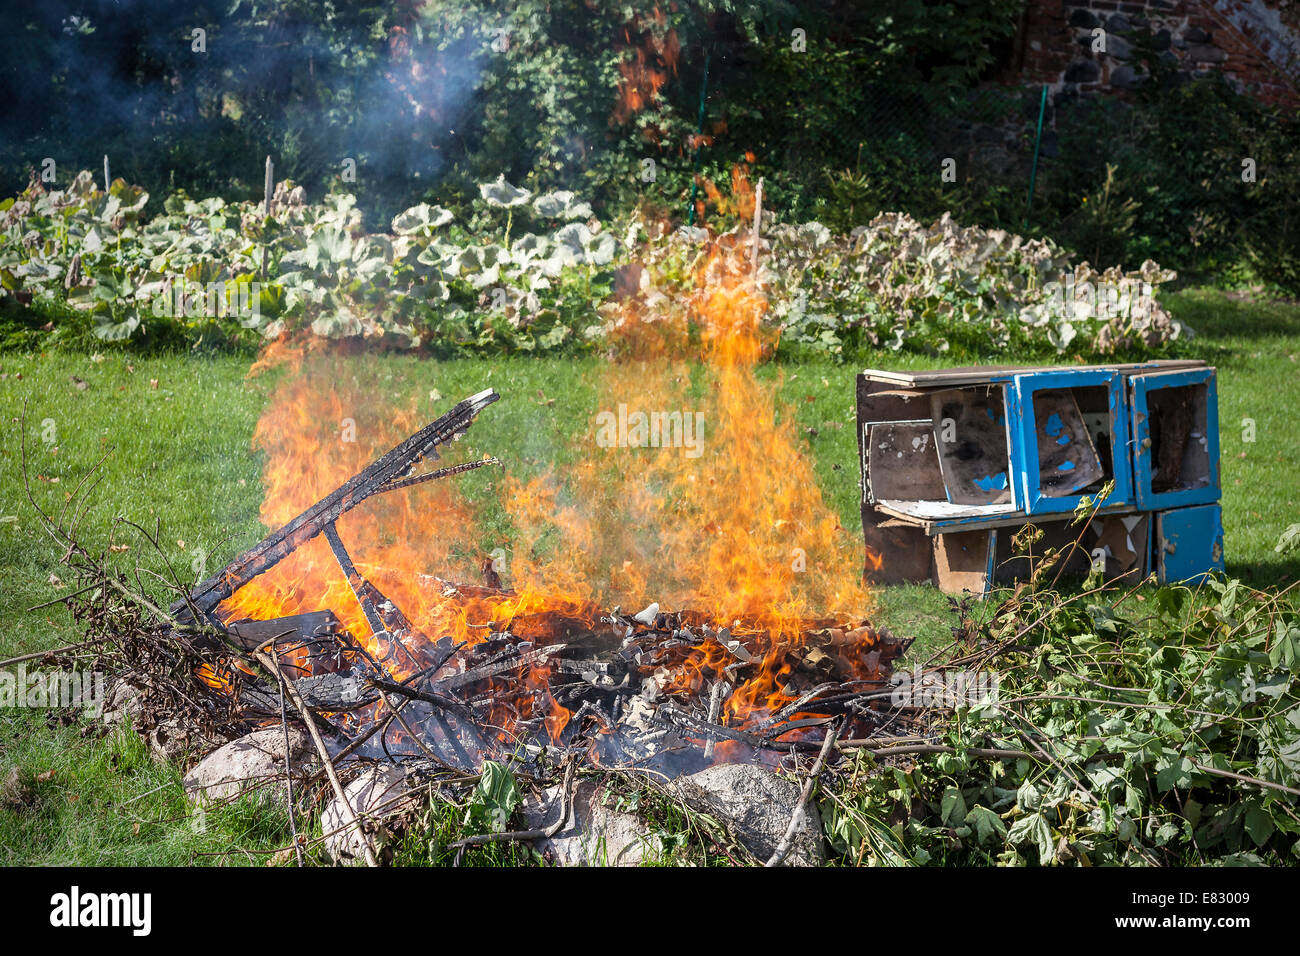 Rifiuti nel fuoco, giardino masterizzazione illegale rifiutare. Foto Stock